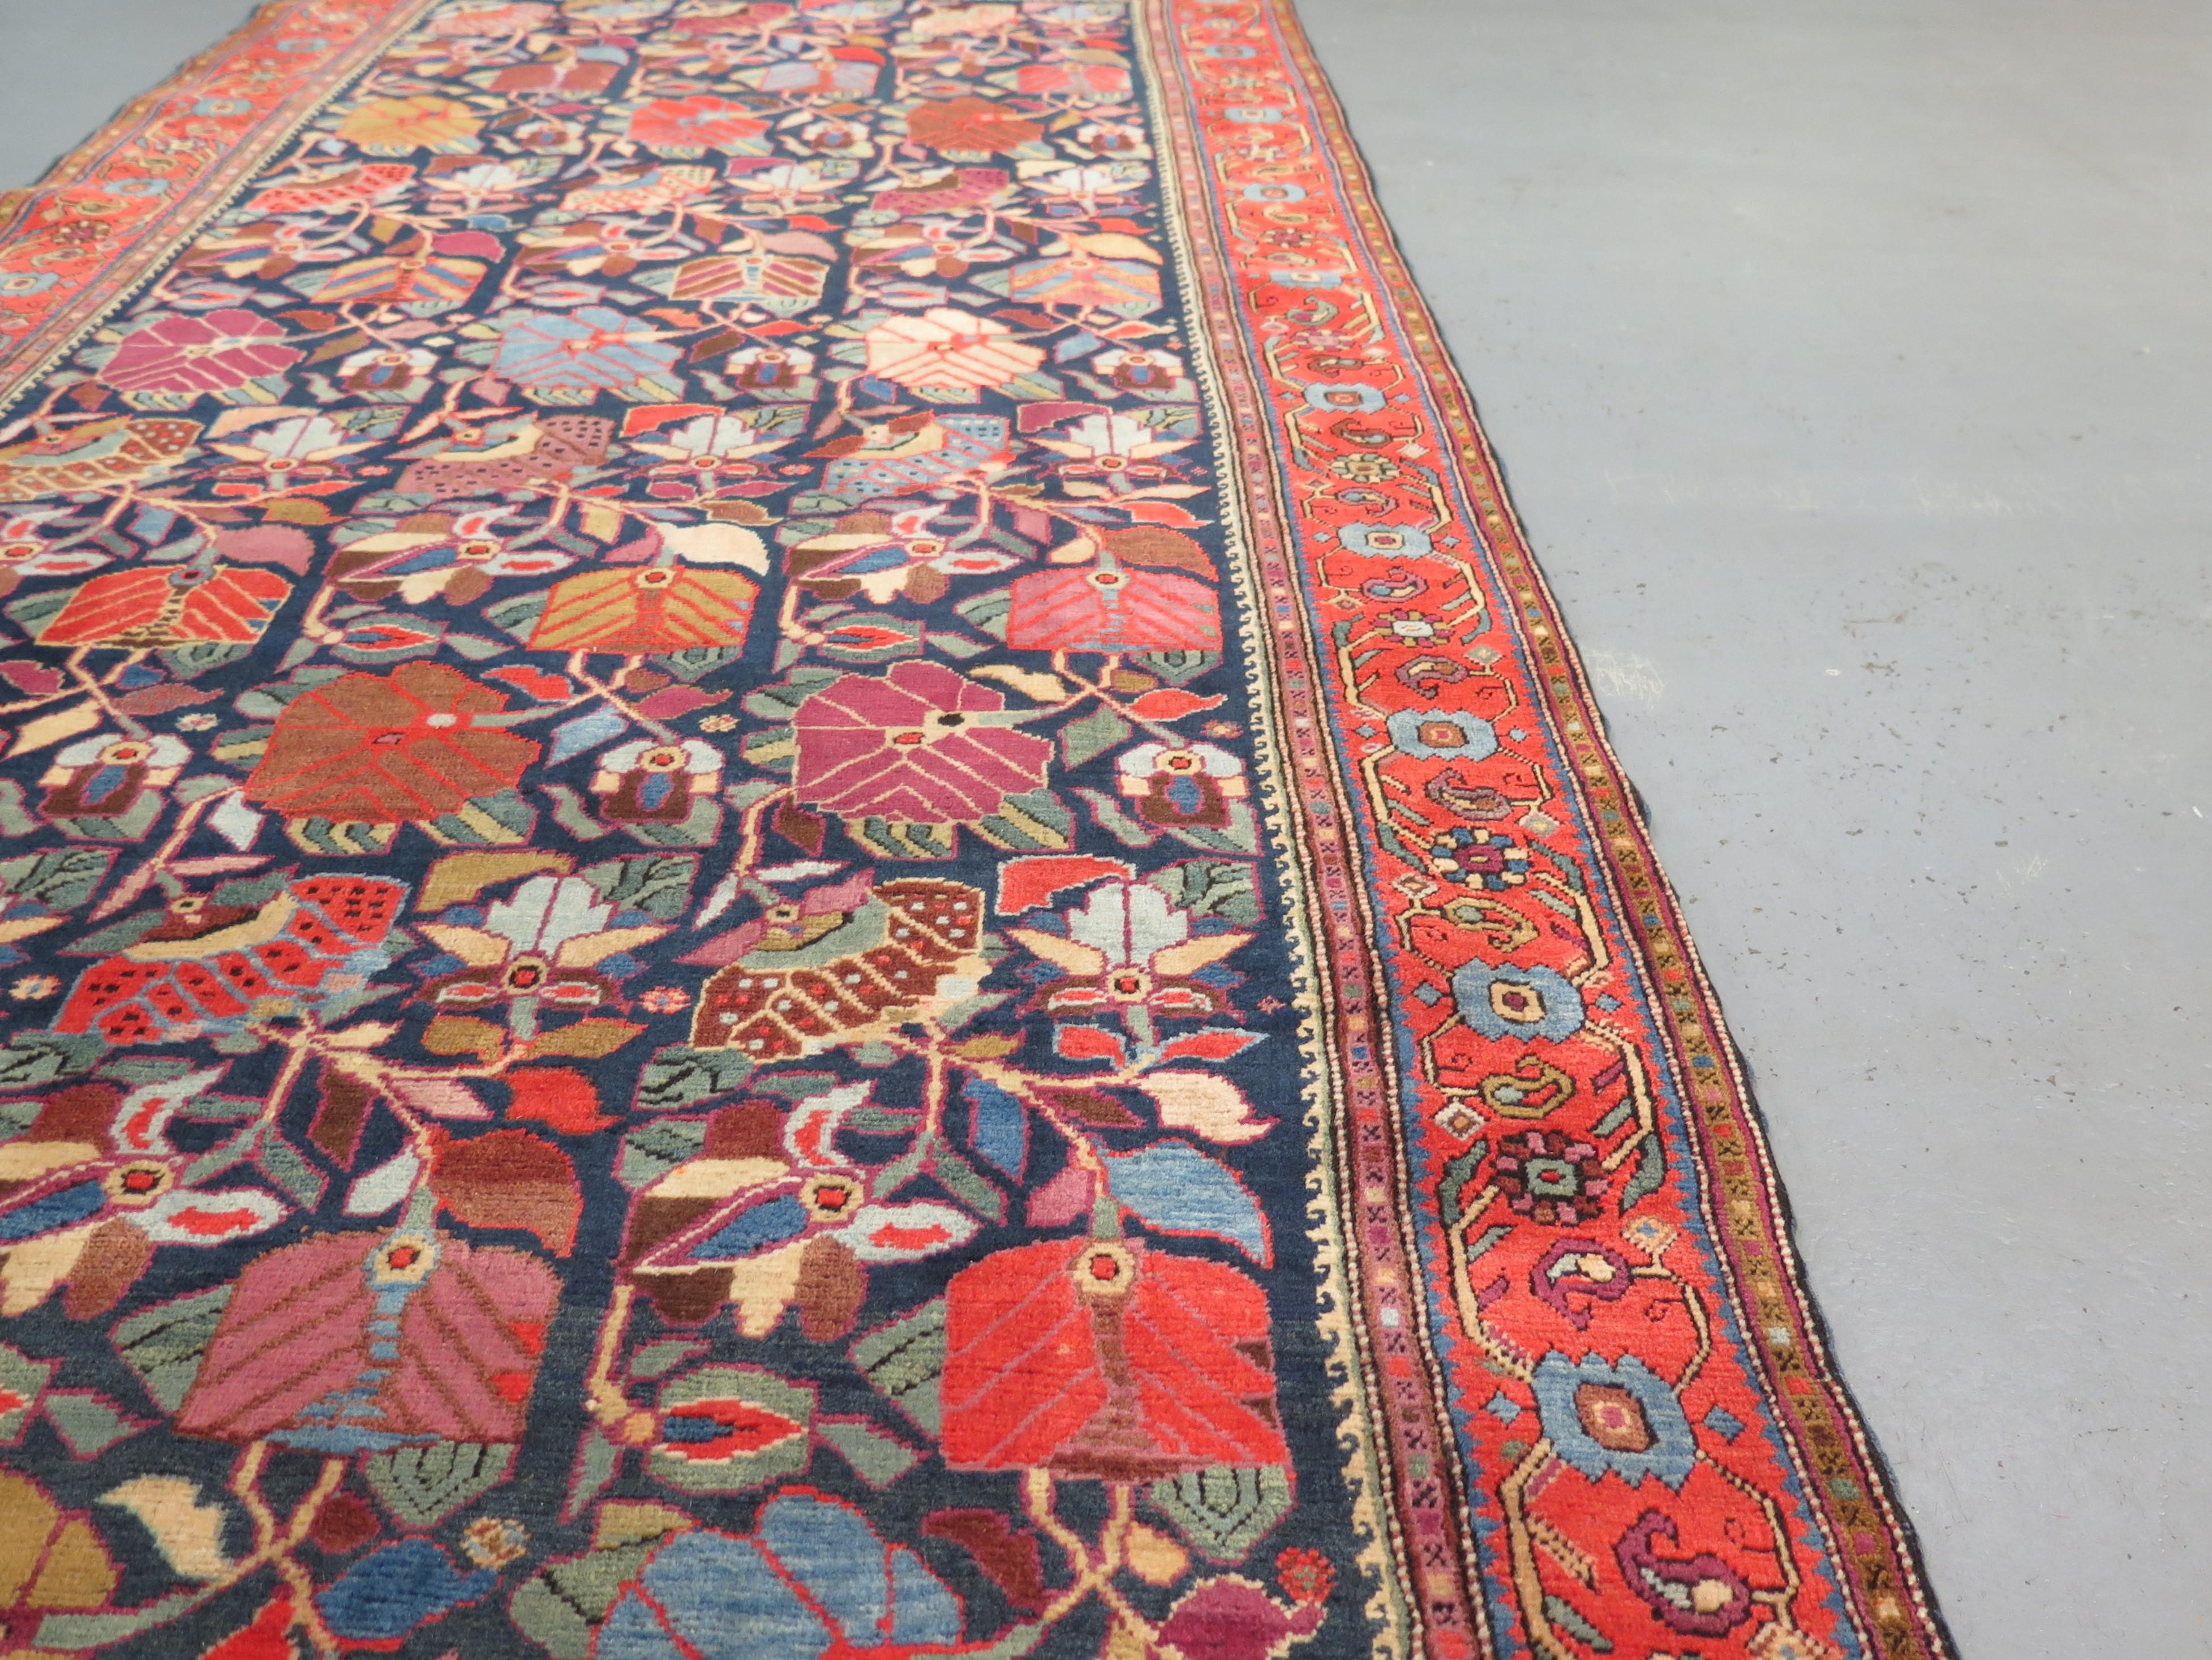 Antike Karabagh-Teppiche sind bei Sammlern und Designern sehr begehrt, da sie einige der ältesten und vielfältigsten Designs aller kaukasischen Knüpfungen aufweisen und vielleicht das Beste an Qualität und Kunstfertigkeit unter den Stücken aus